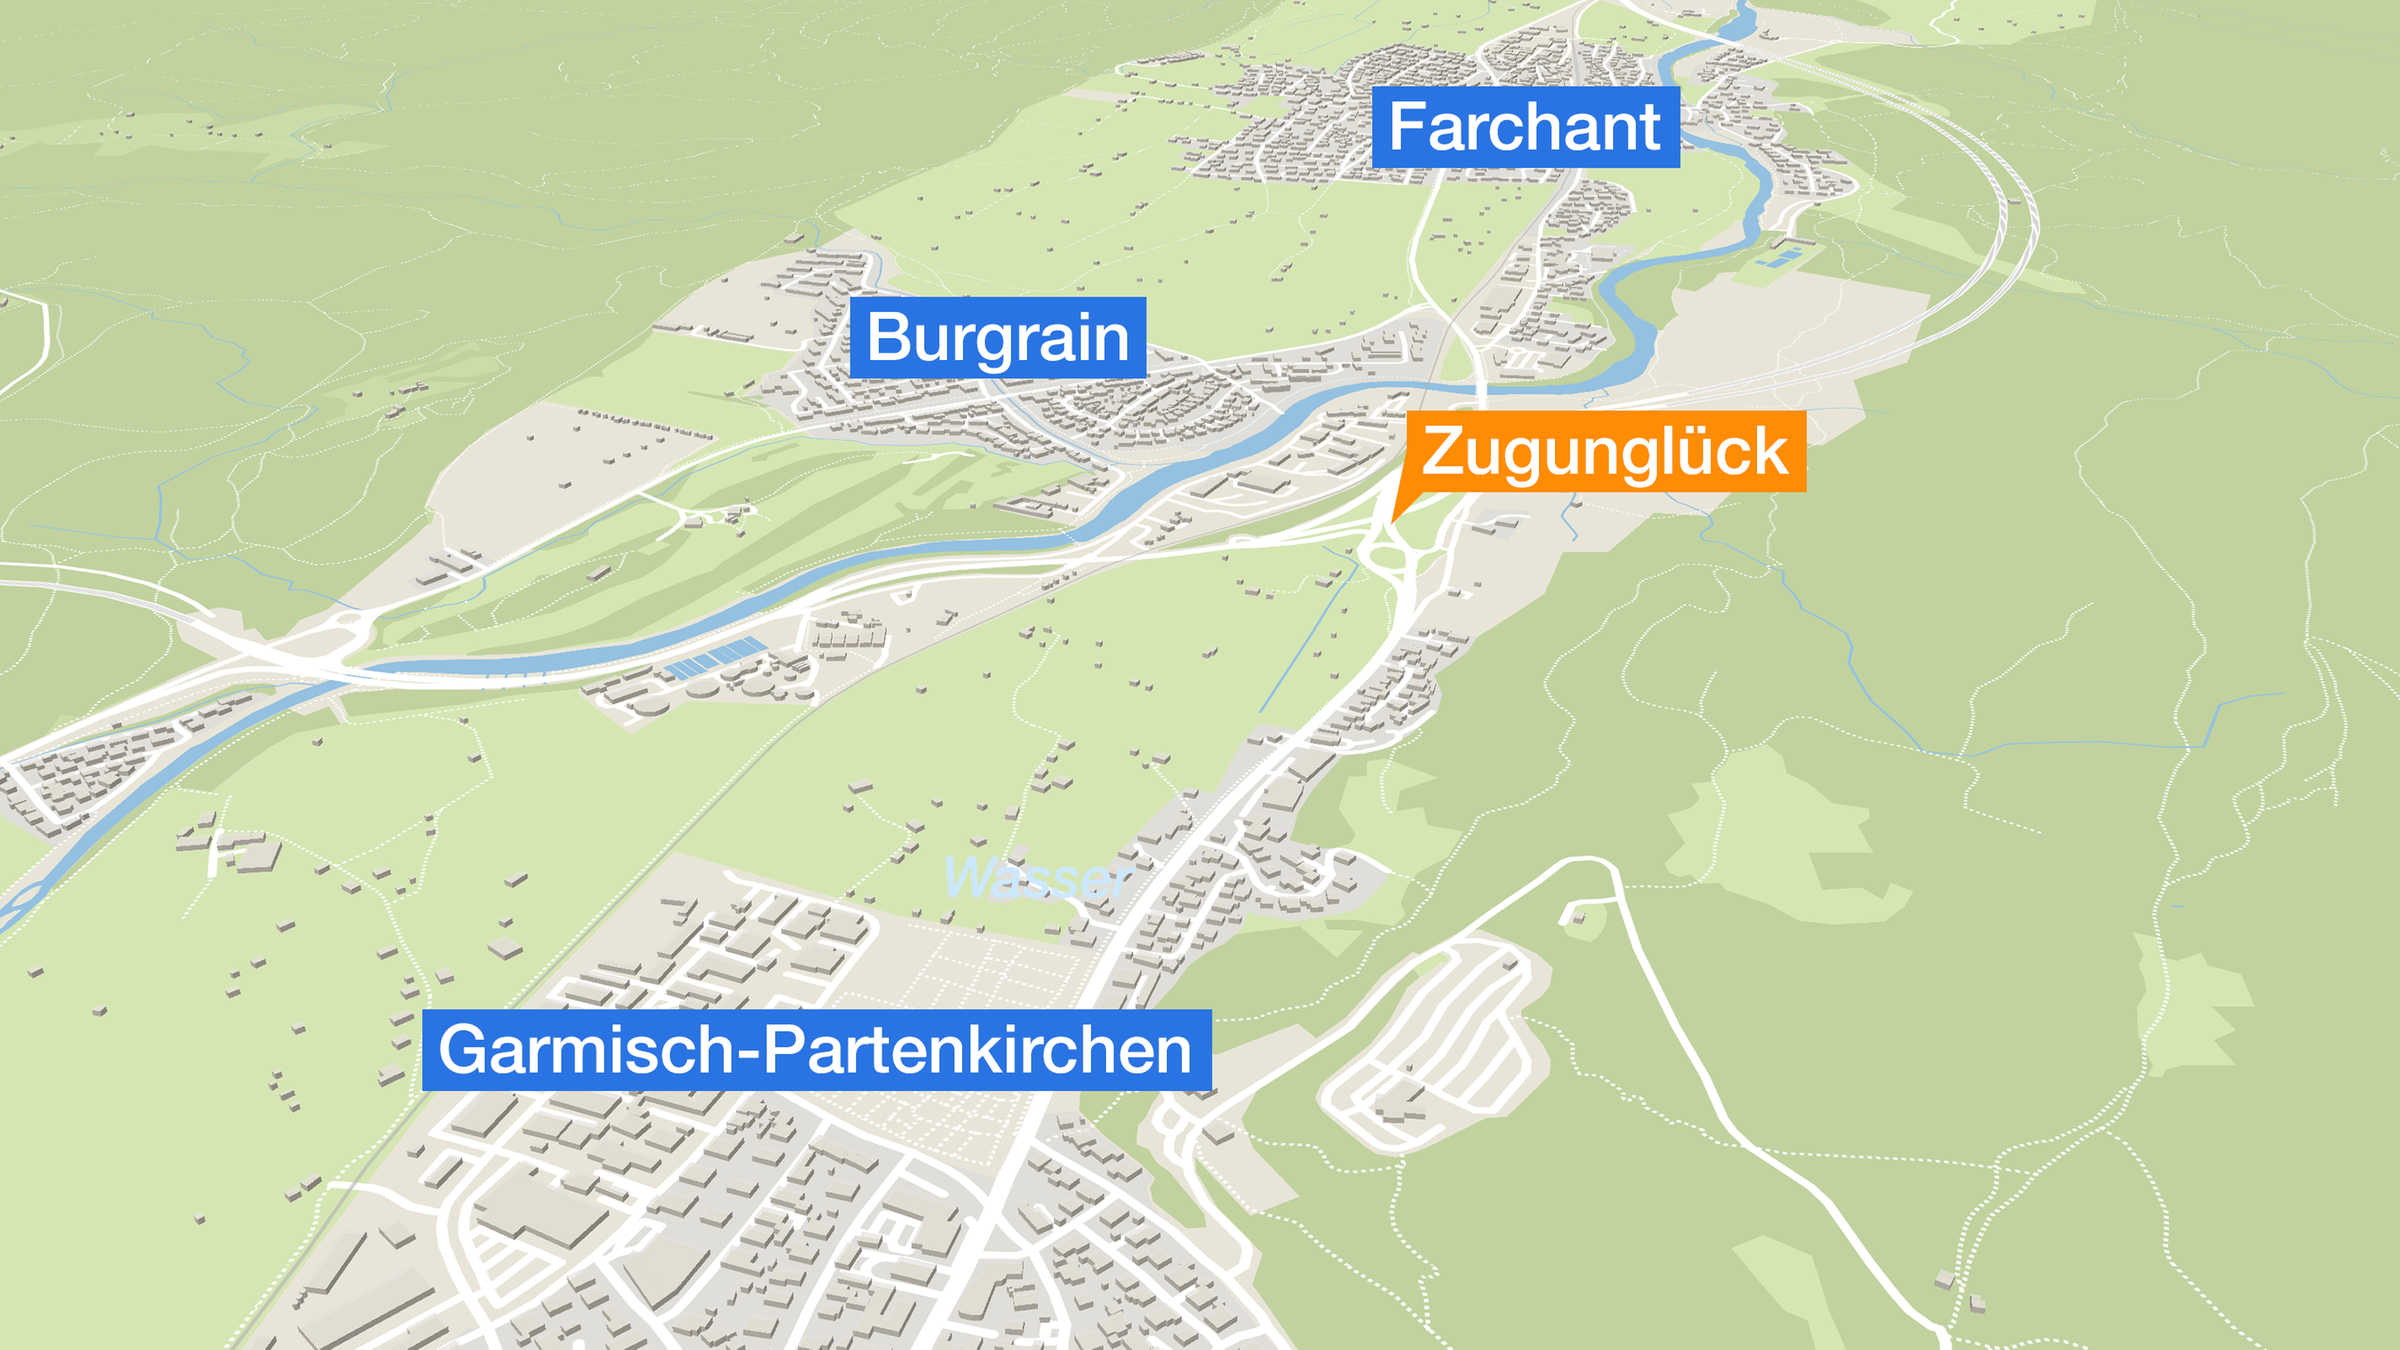 Karte: Garmisch-Partenkirchen, Zugunglück